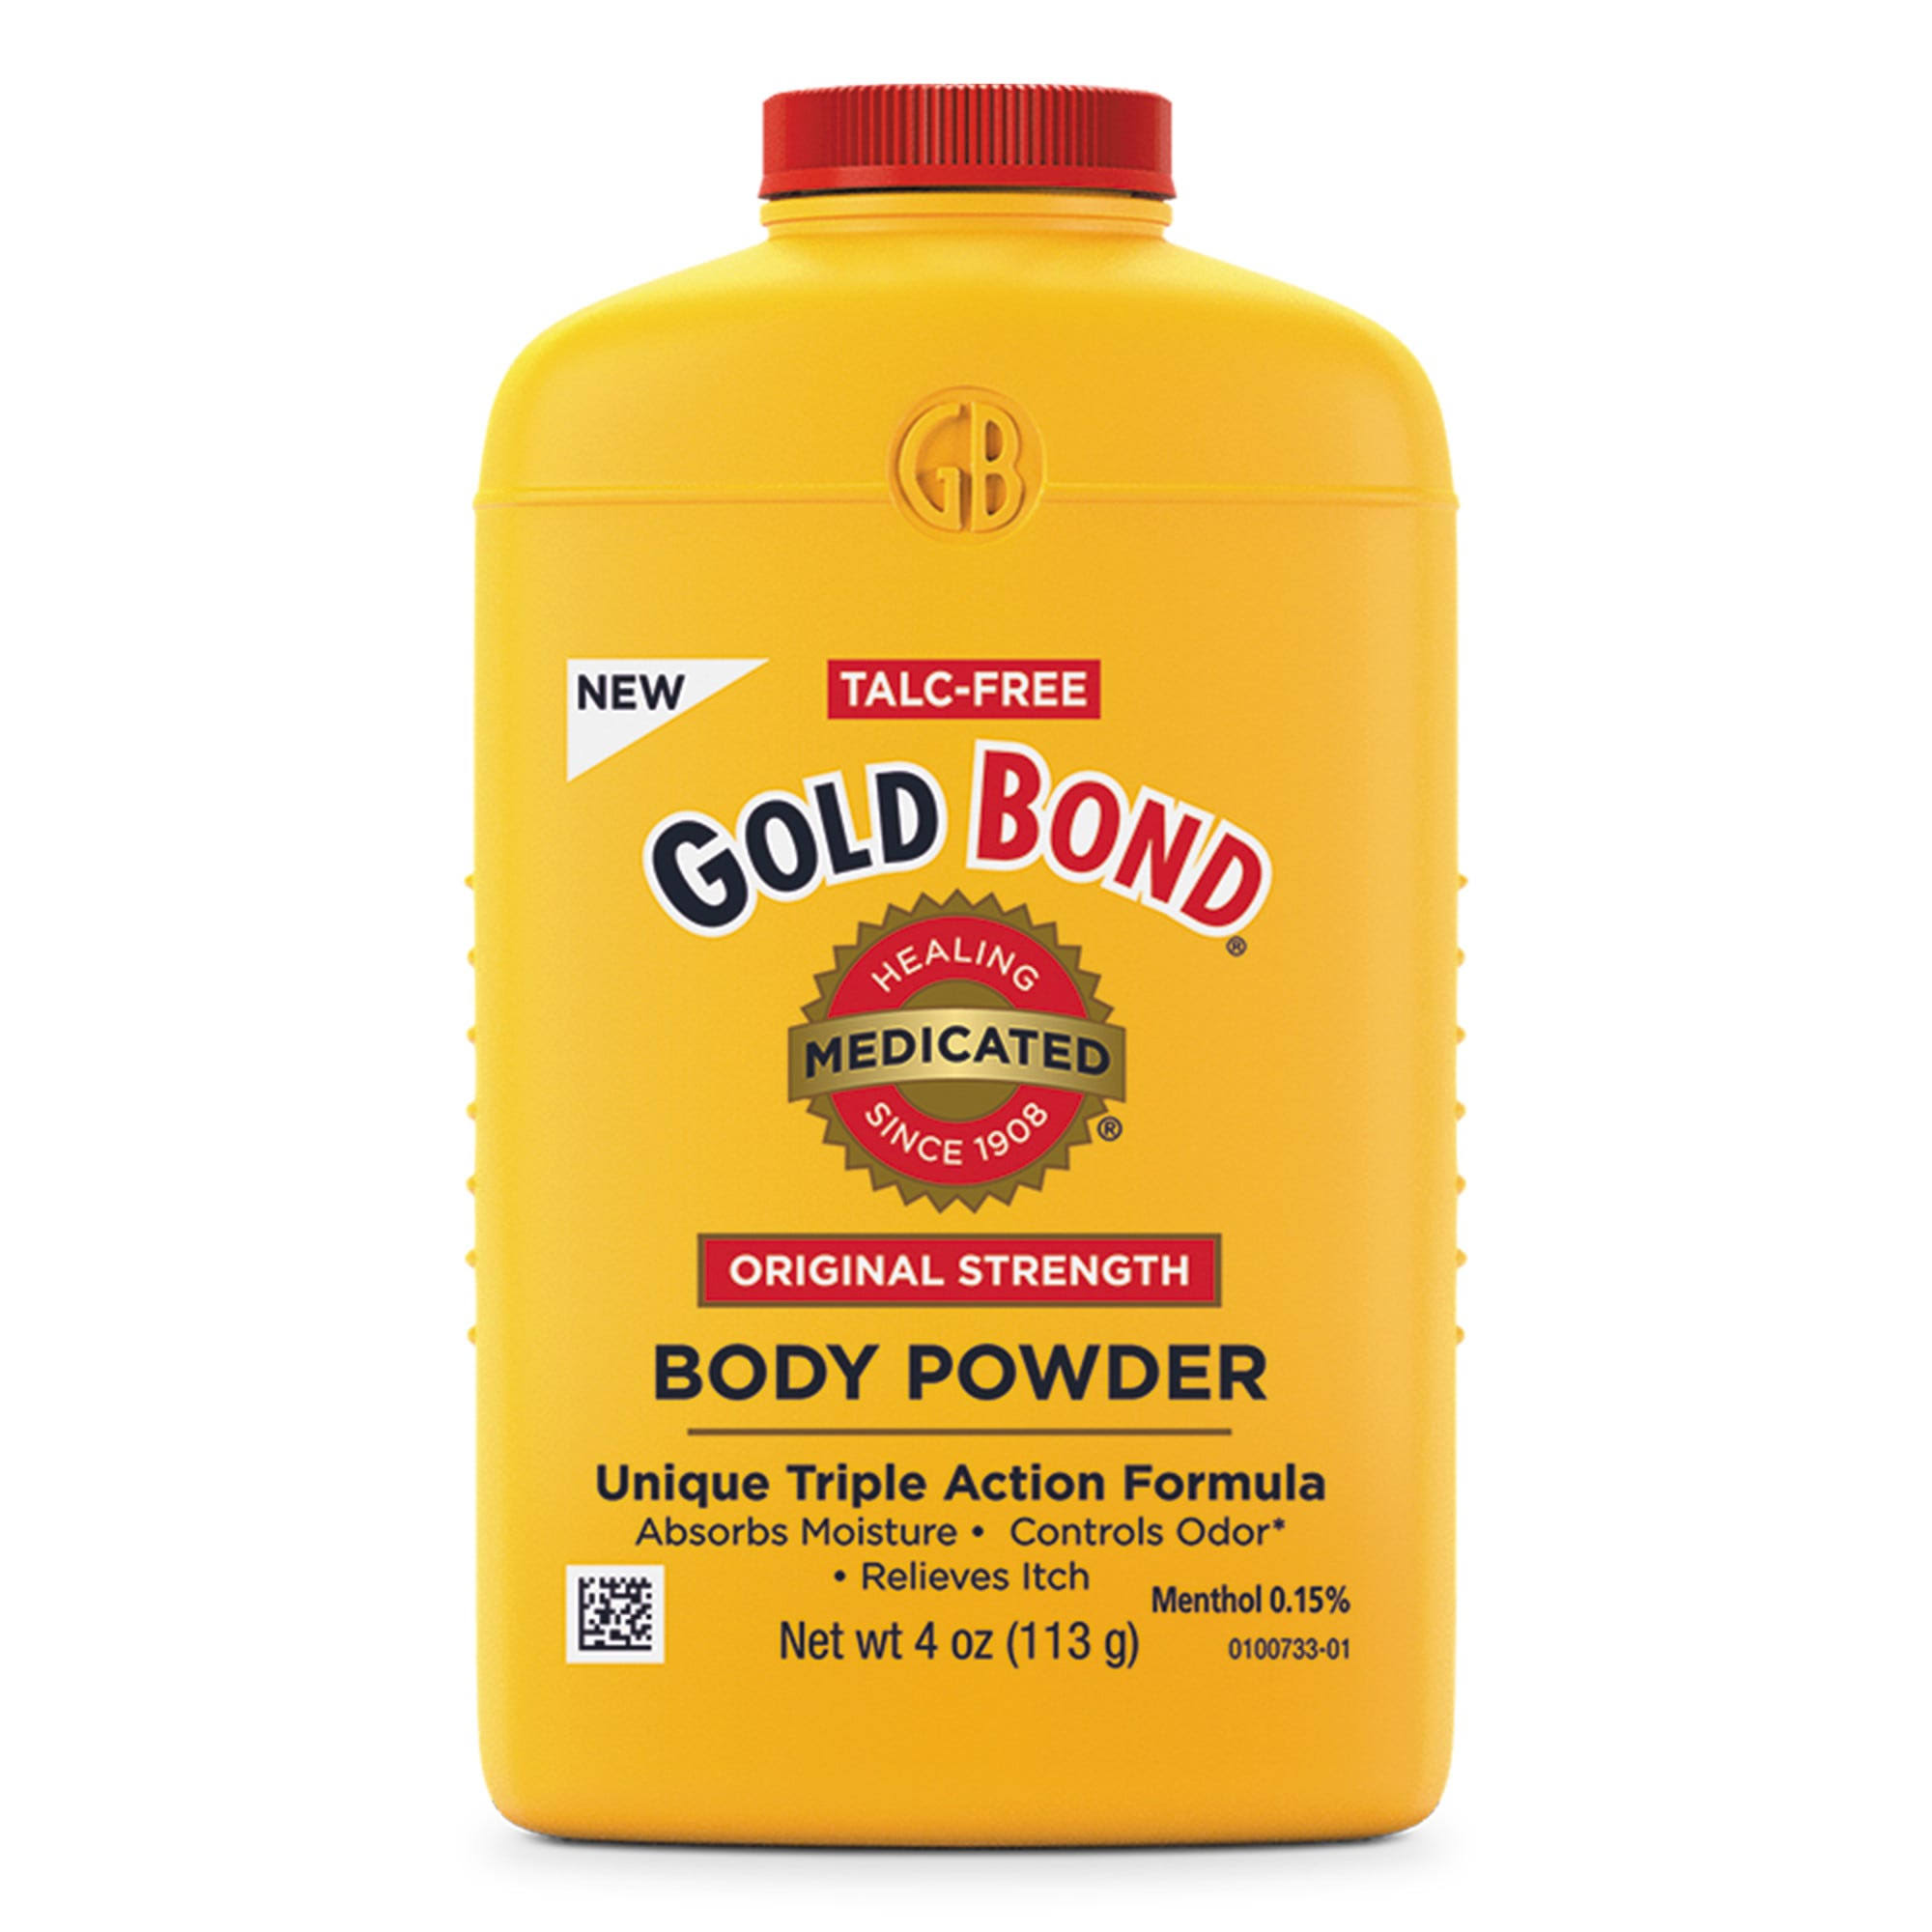 Gold Bond Body Powder, Original Strength, Medicated - 4 oz